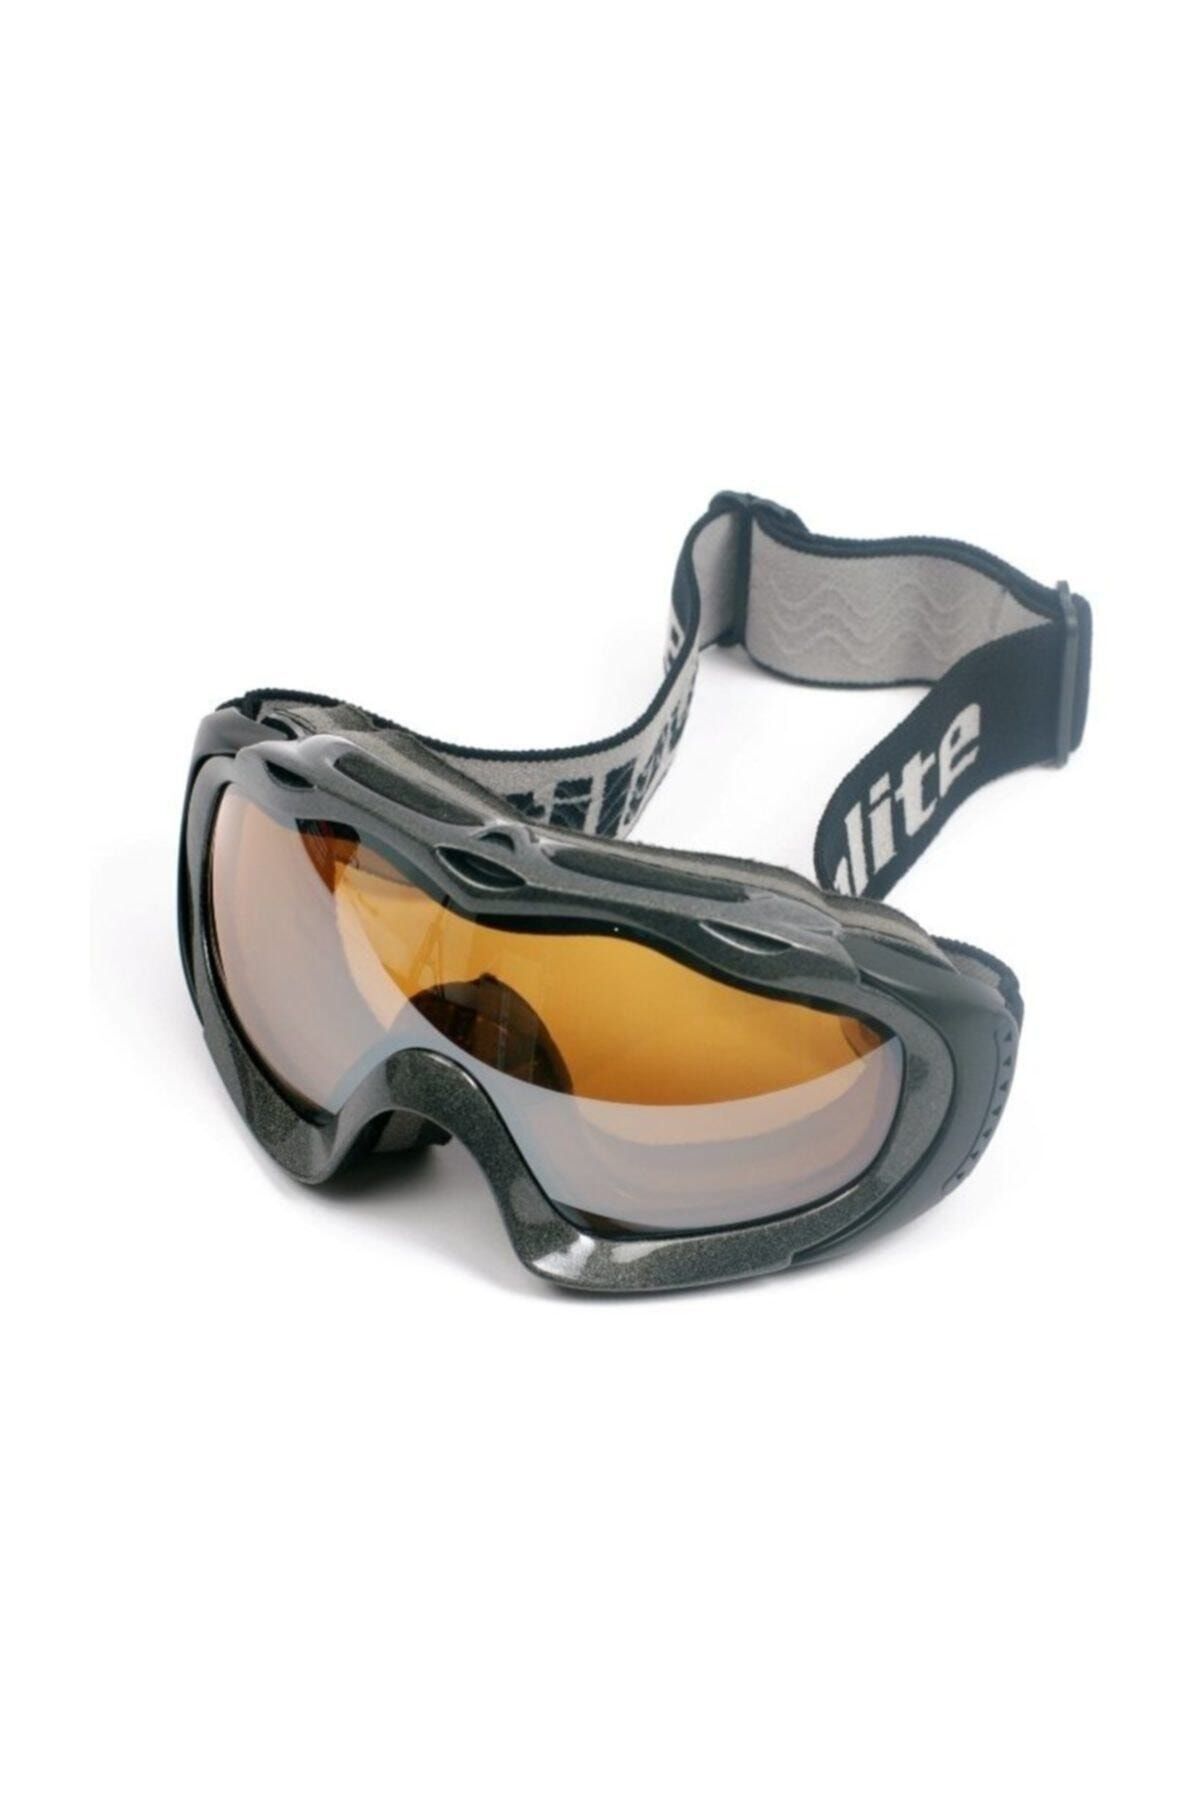 Evolite Kayak Gözlüğü Gtx - Sp210-g